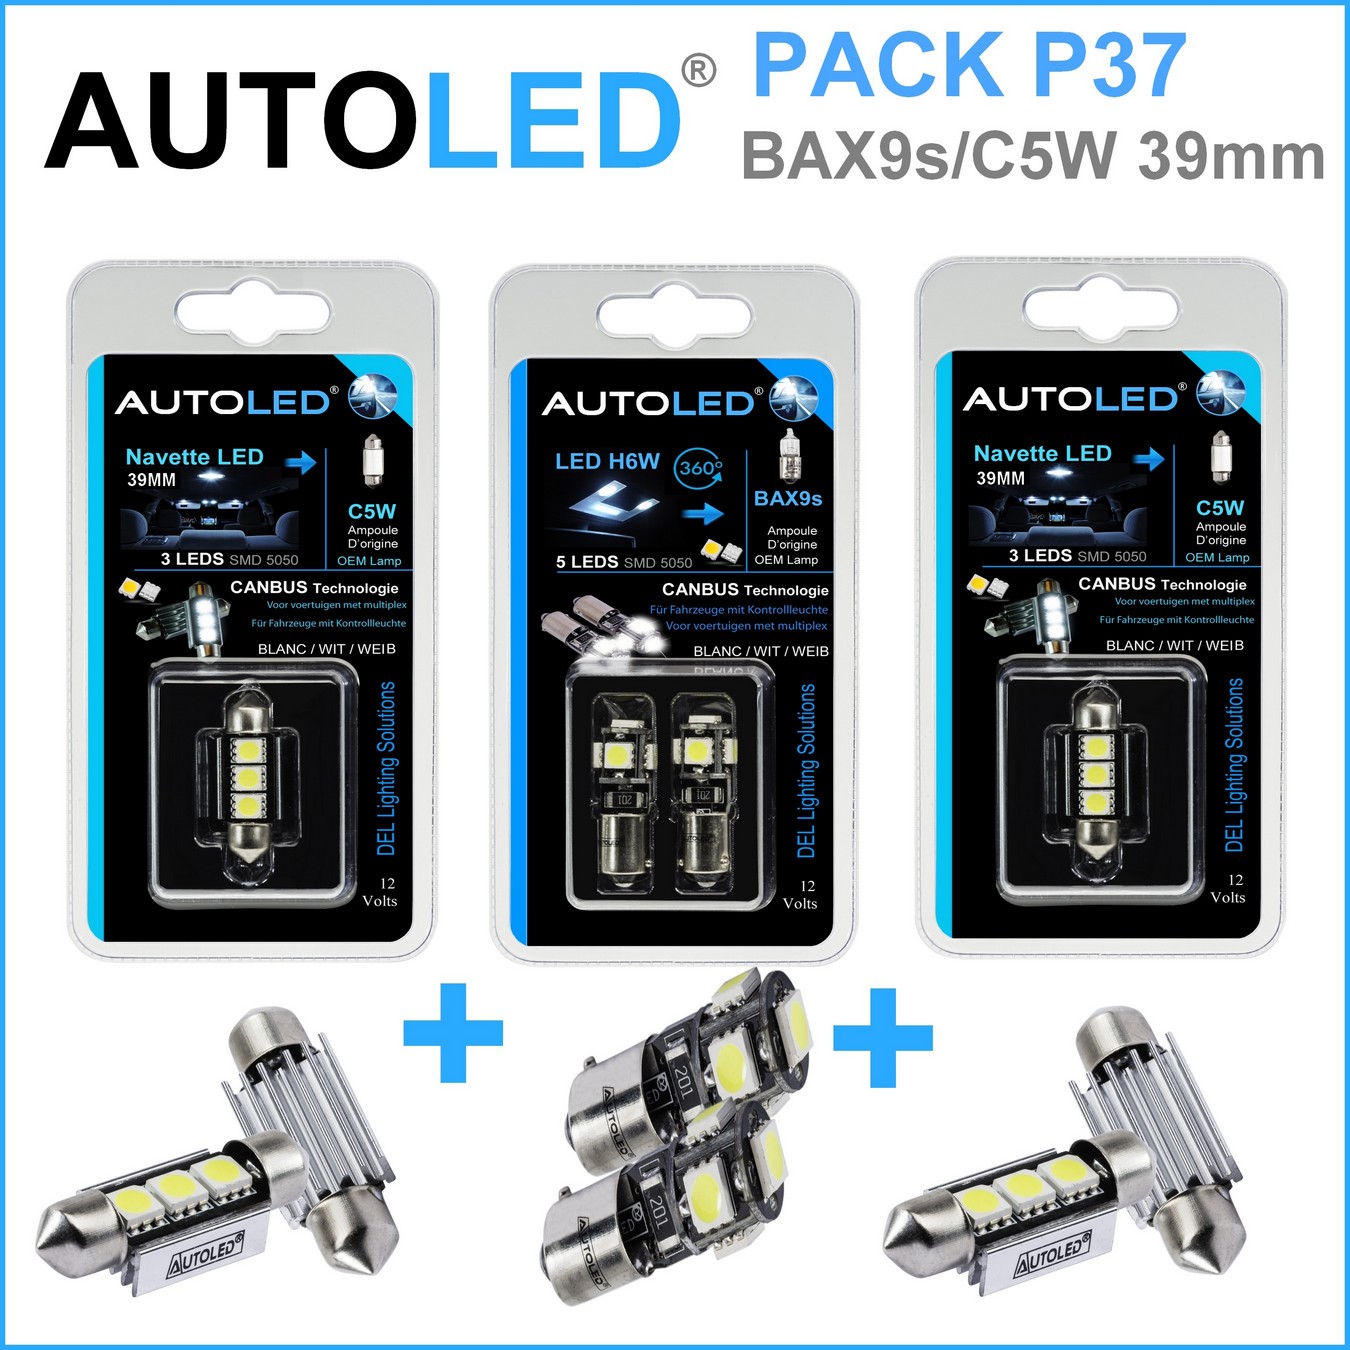 Pack-4-ampoules-led-canbus-blanc-habitacle-plaque-plafonnier-feux-de position-coffre-bax9s-h6w-canbus-5leds-smd-5050-canbus-navette-c5w-c10w-39mm-3leds-blanc-eclairage-led-autoled-pack-p37.1